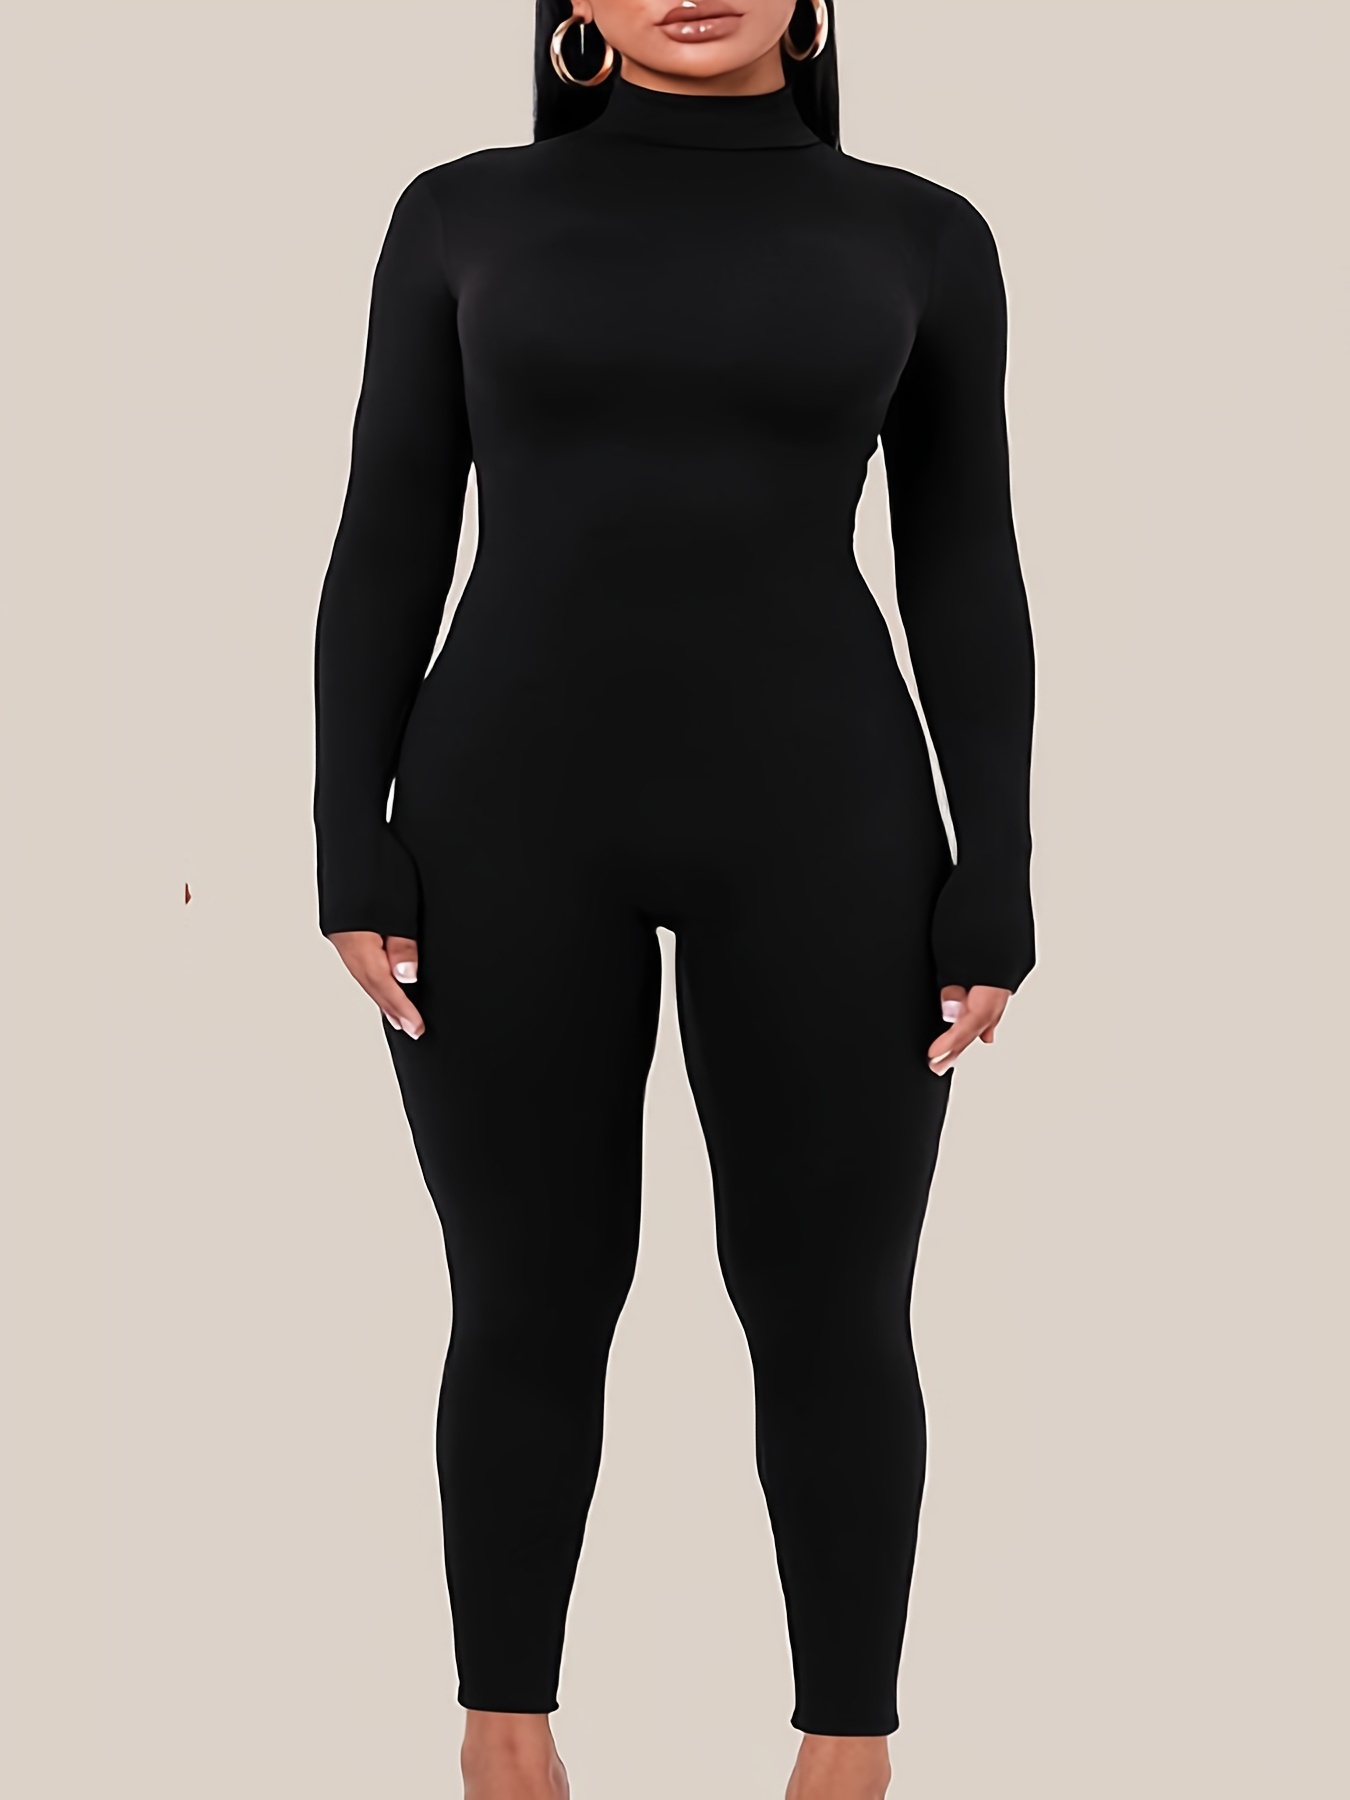 LAOLASI Women's Turtleneck Mock neck Long Sleeve Slim Fit Casual Bodysuit  Jumpsuit : : Clothing, Shoes & Accessories